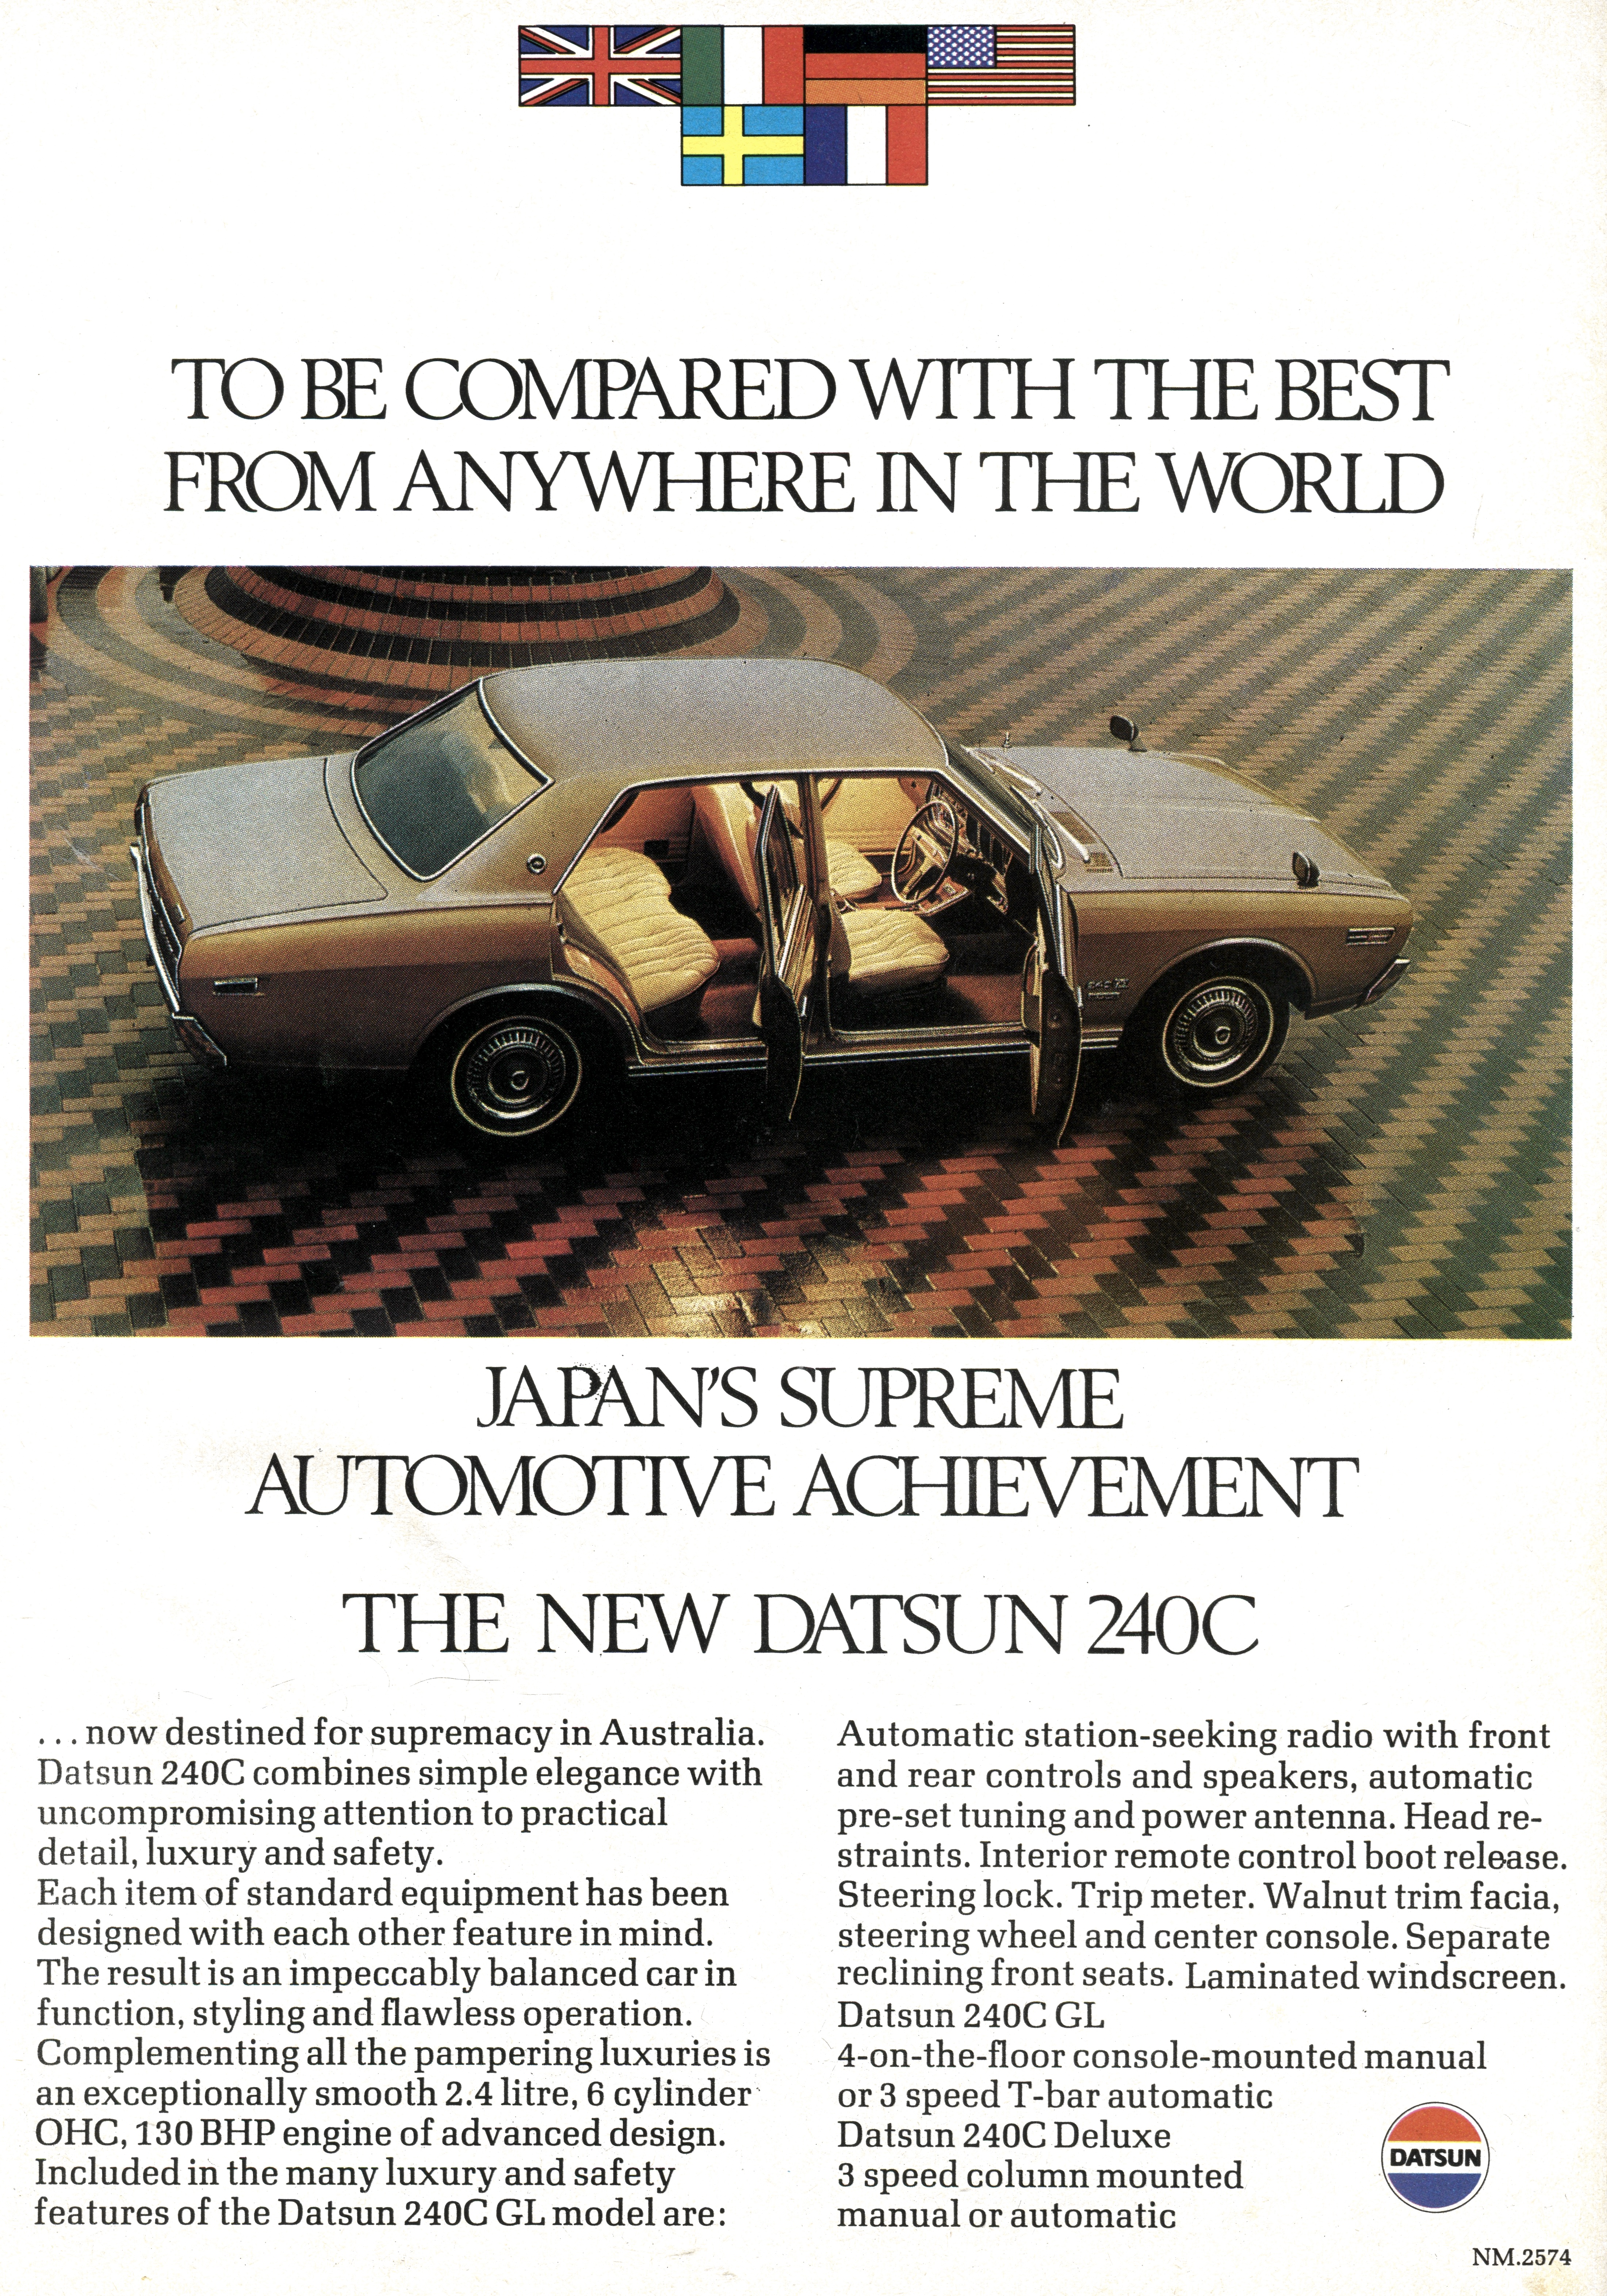 1972 Datsun 240C - Japans Supreme Automotive Achievement